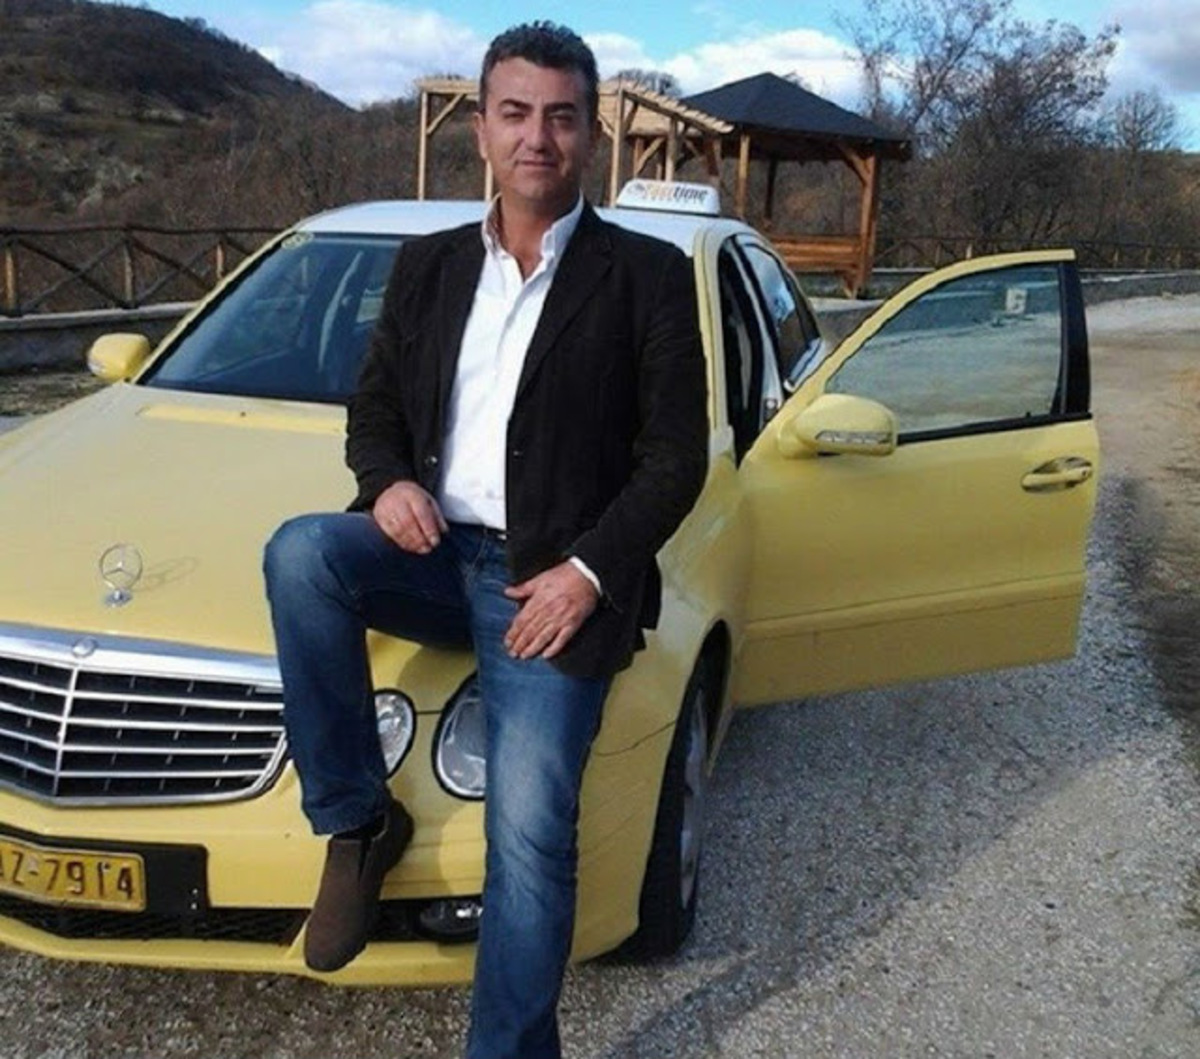 Δις ισόβια στον ειδικό φρουρό για τη δολοφονία του 52χρονου ταξιτζή στην Καστοριά